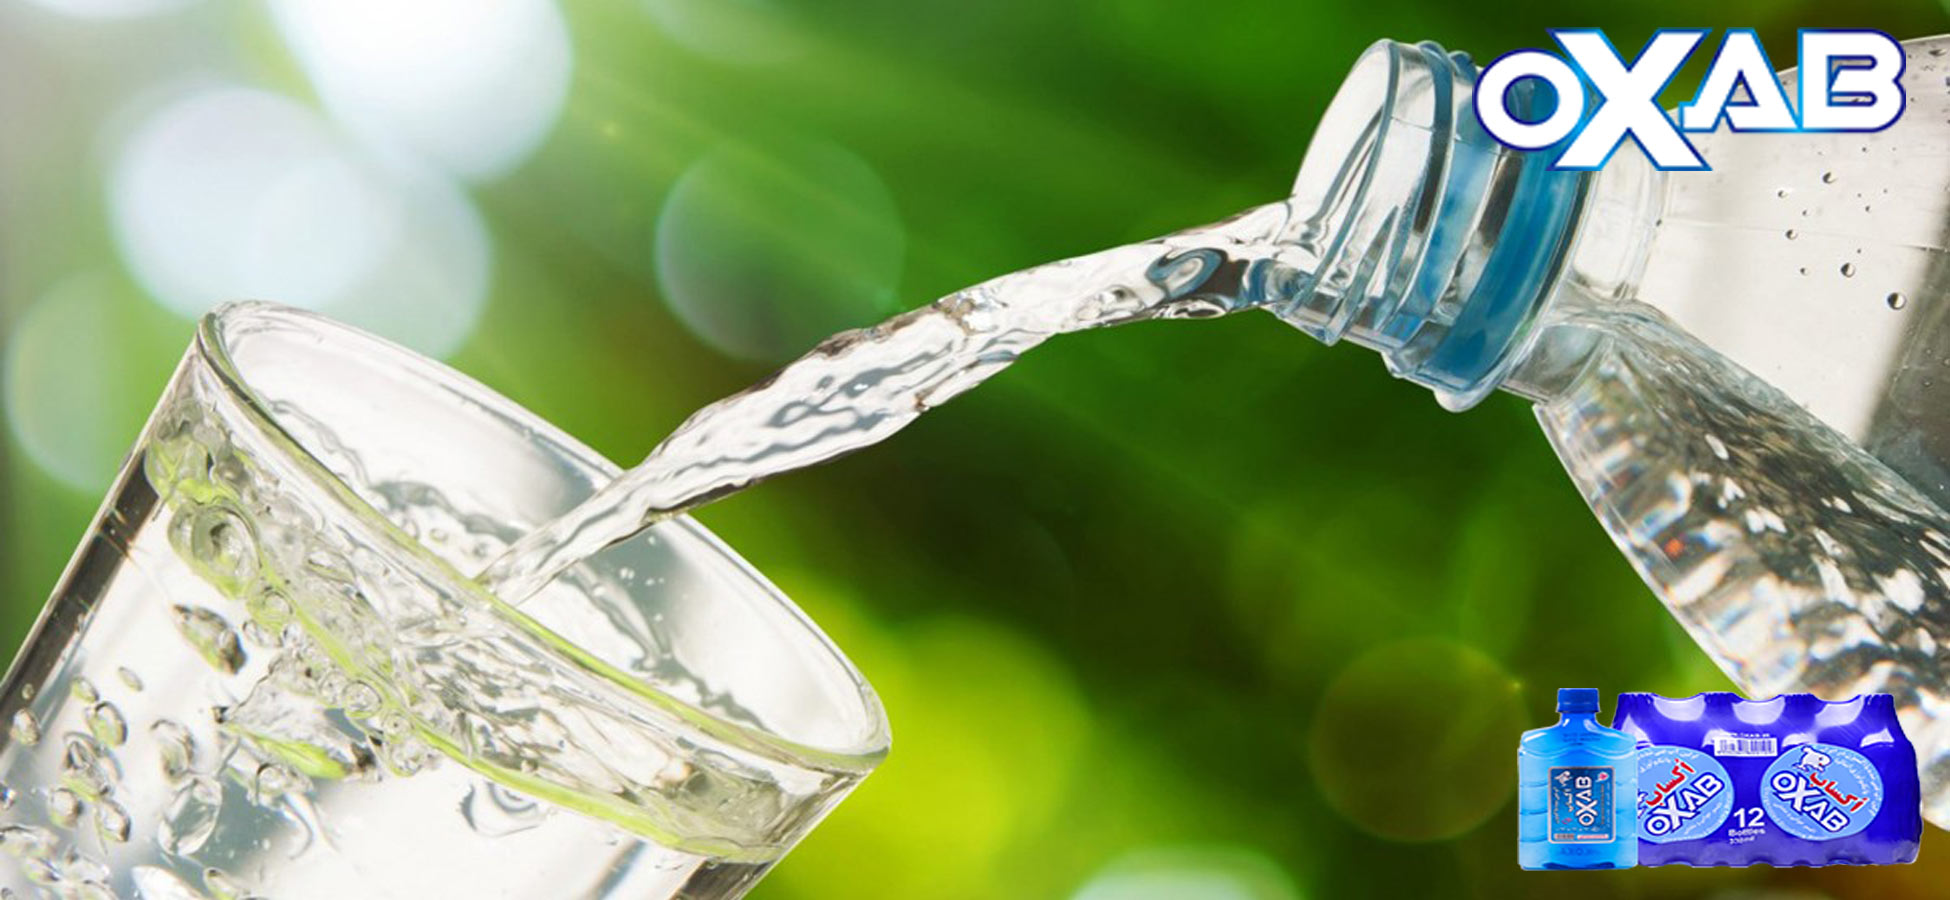 آیا نوشیدن آب چشمه مفید است؟